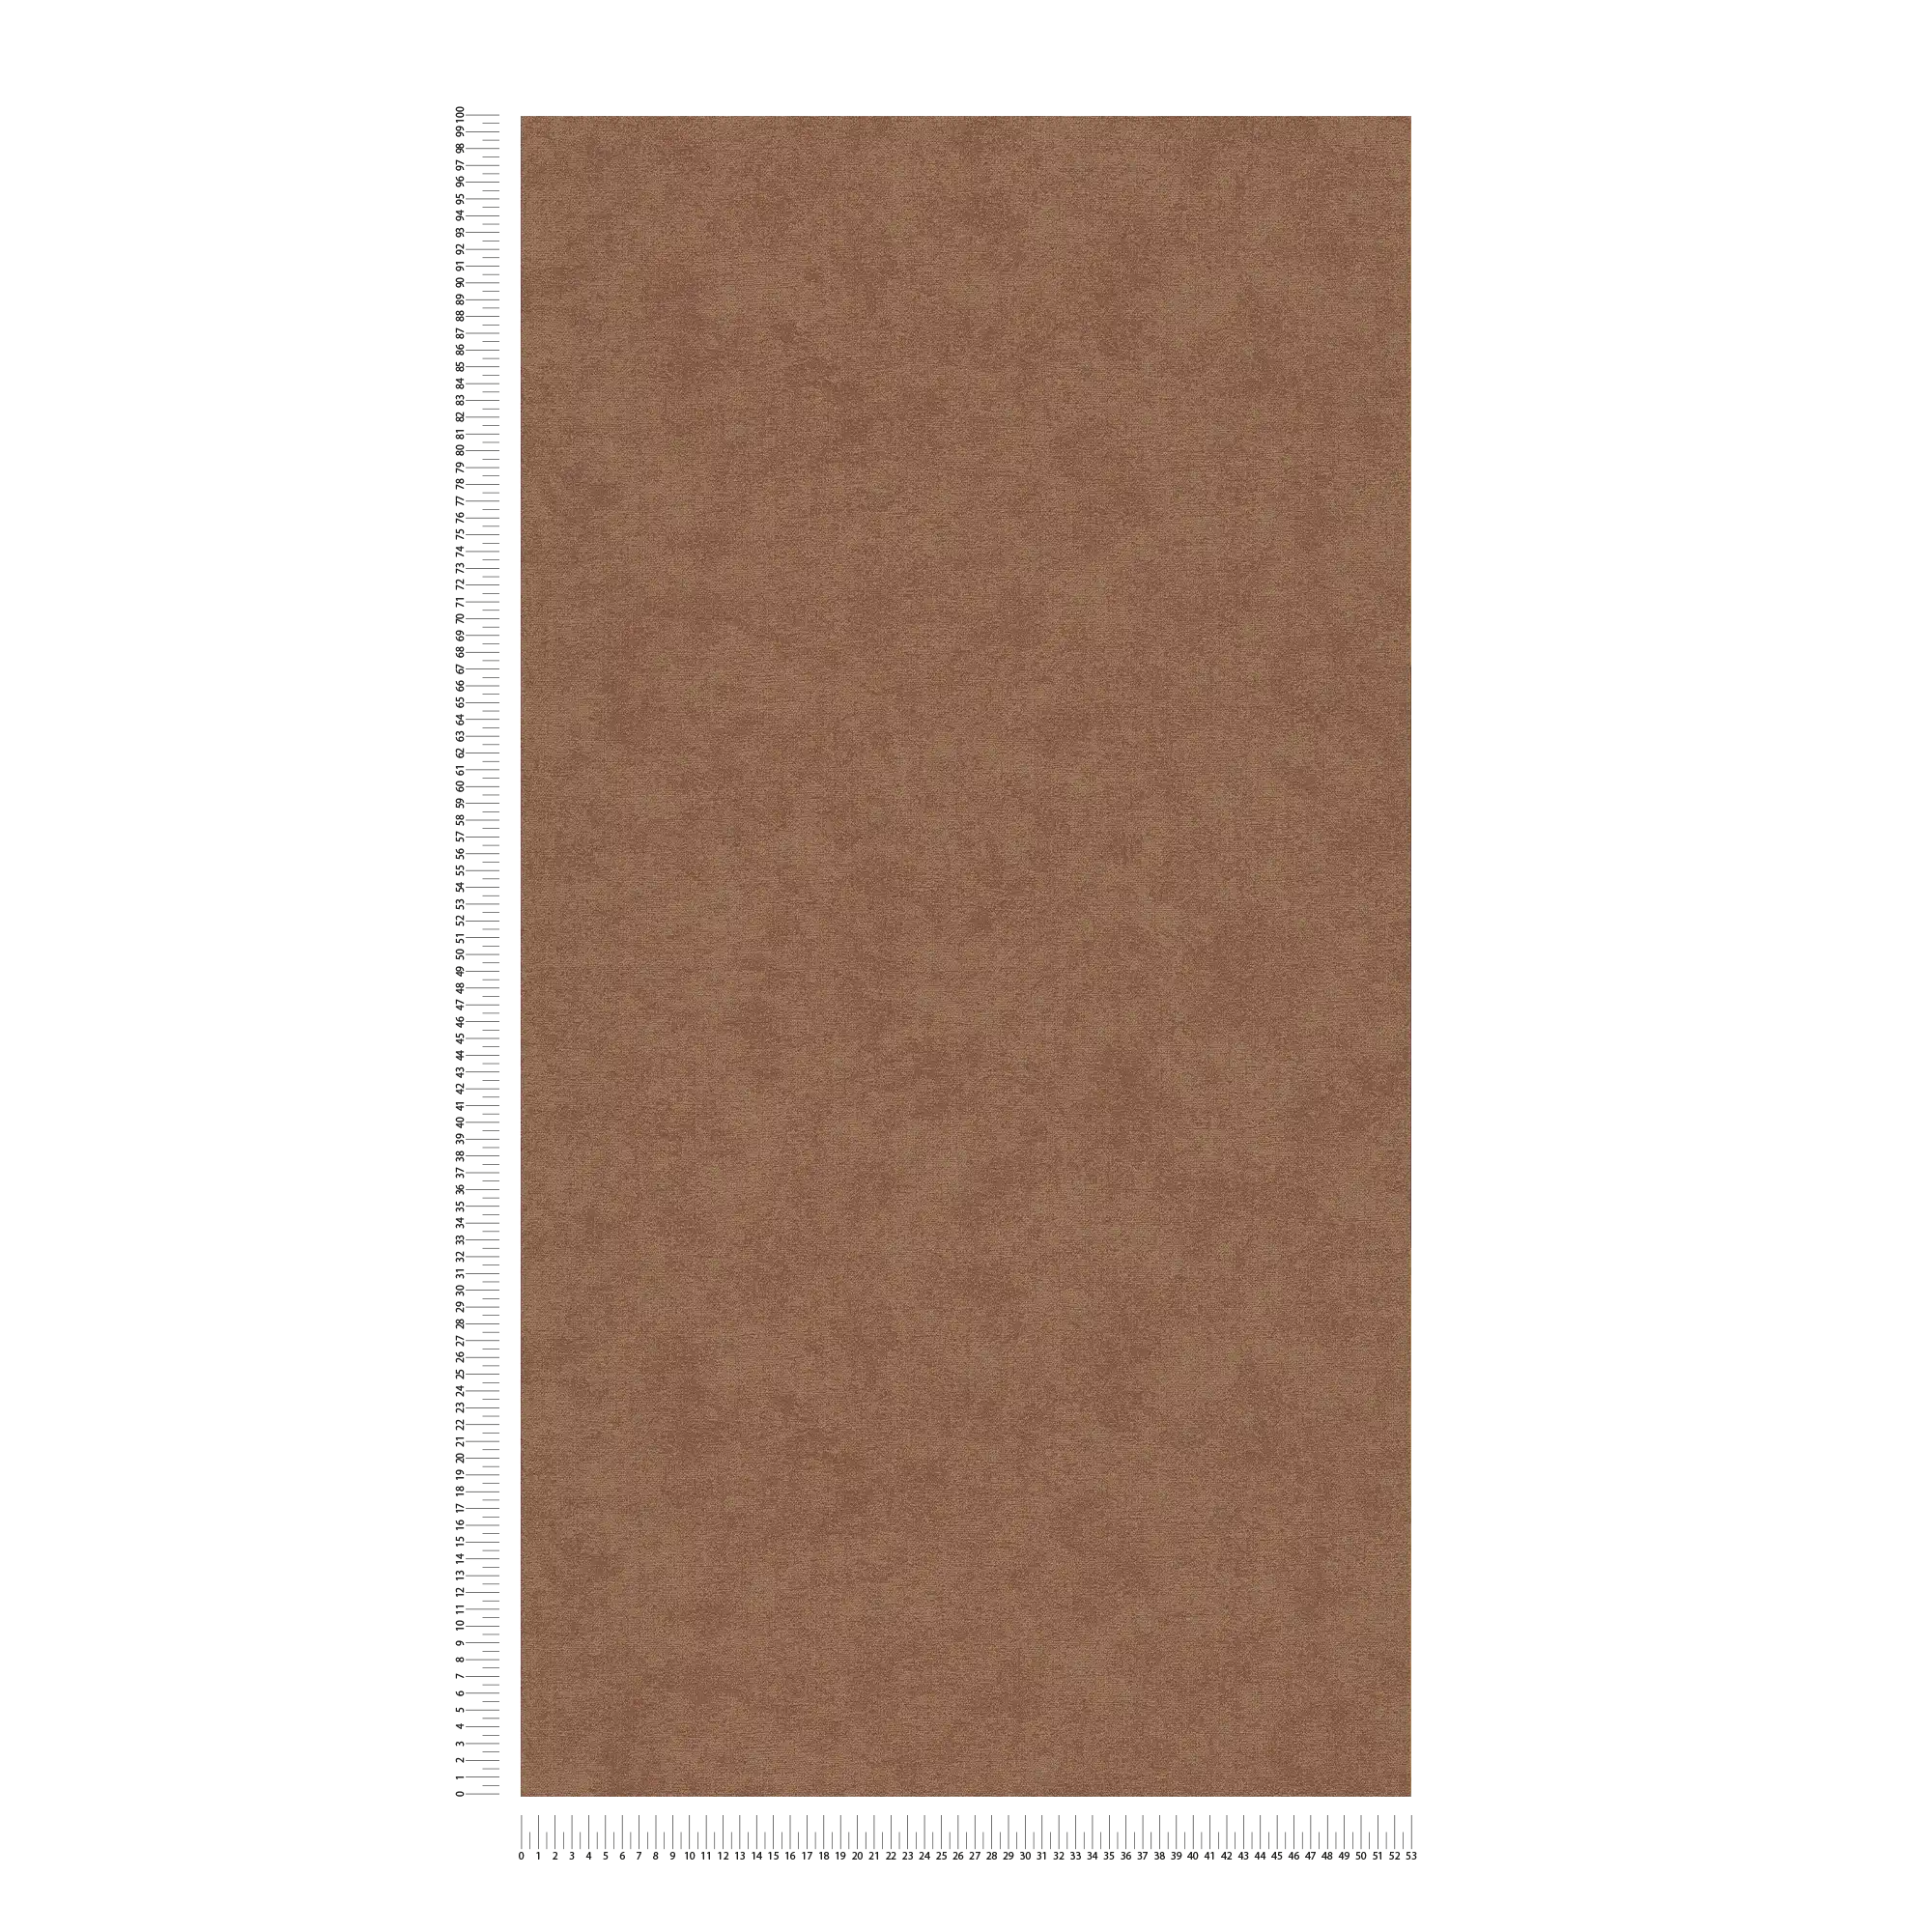             Papel pintado no tejido monocolor con textura sutil - marrón
        